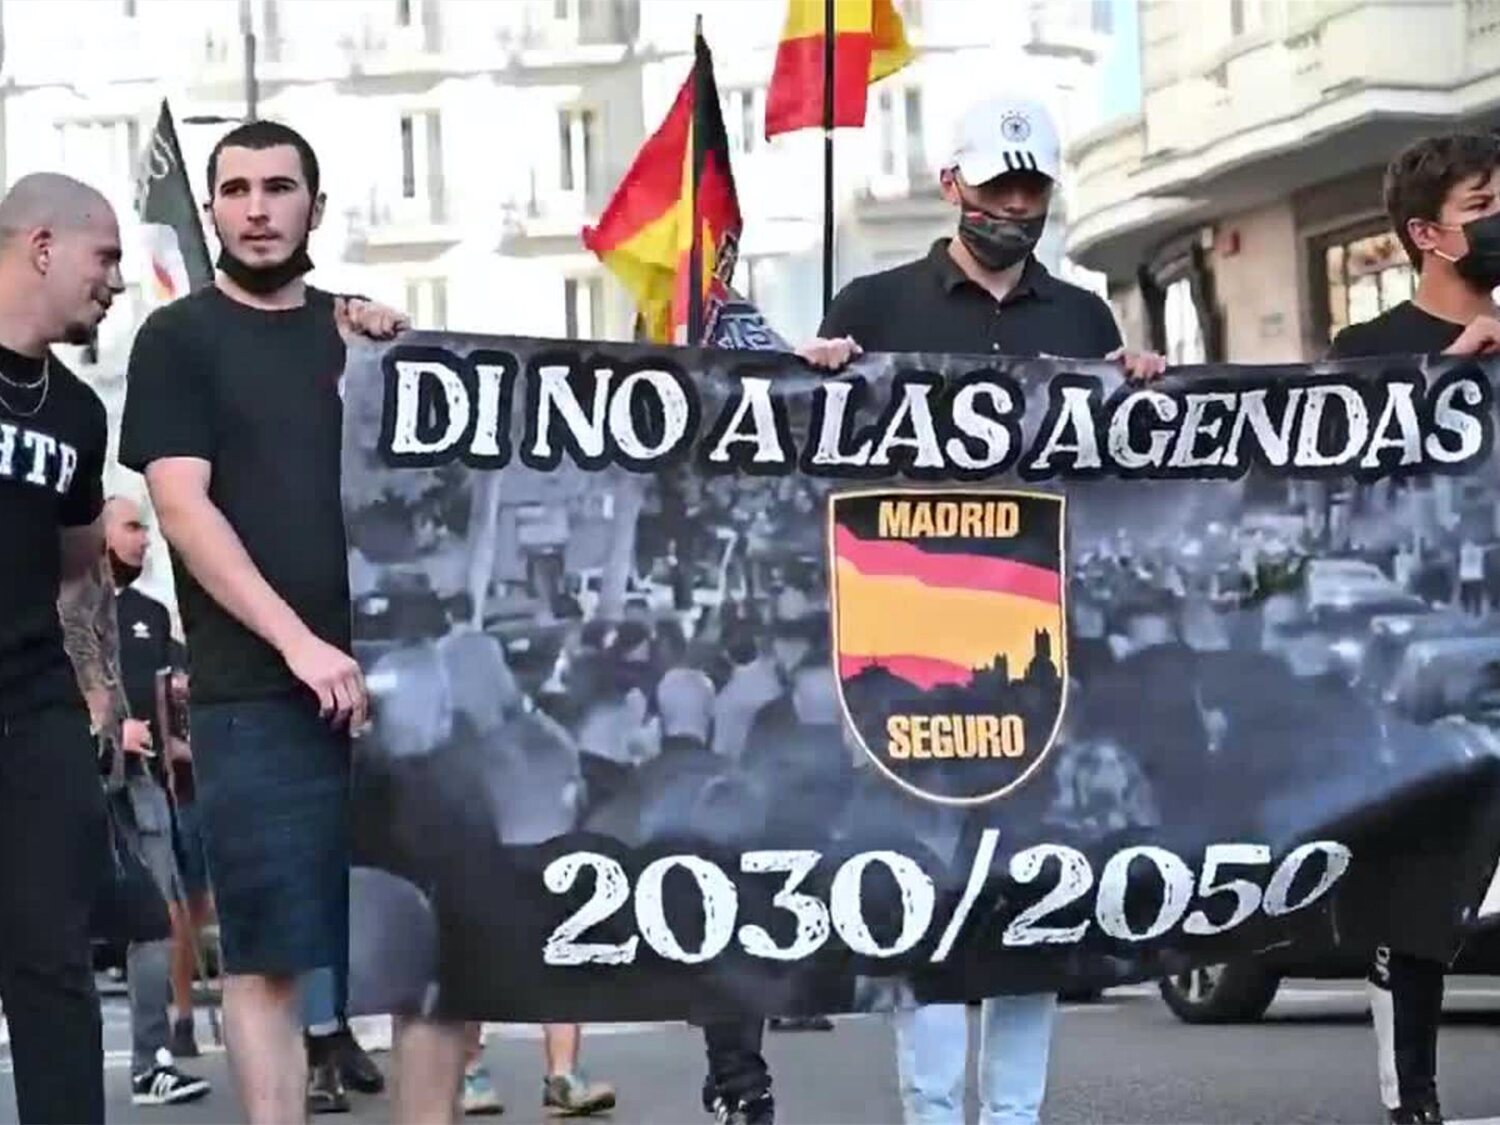 Madrid Seguro: así es la asociación neonazi detrás de la manifestación LGTBIfóbica de Chueca